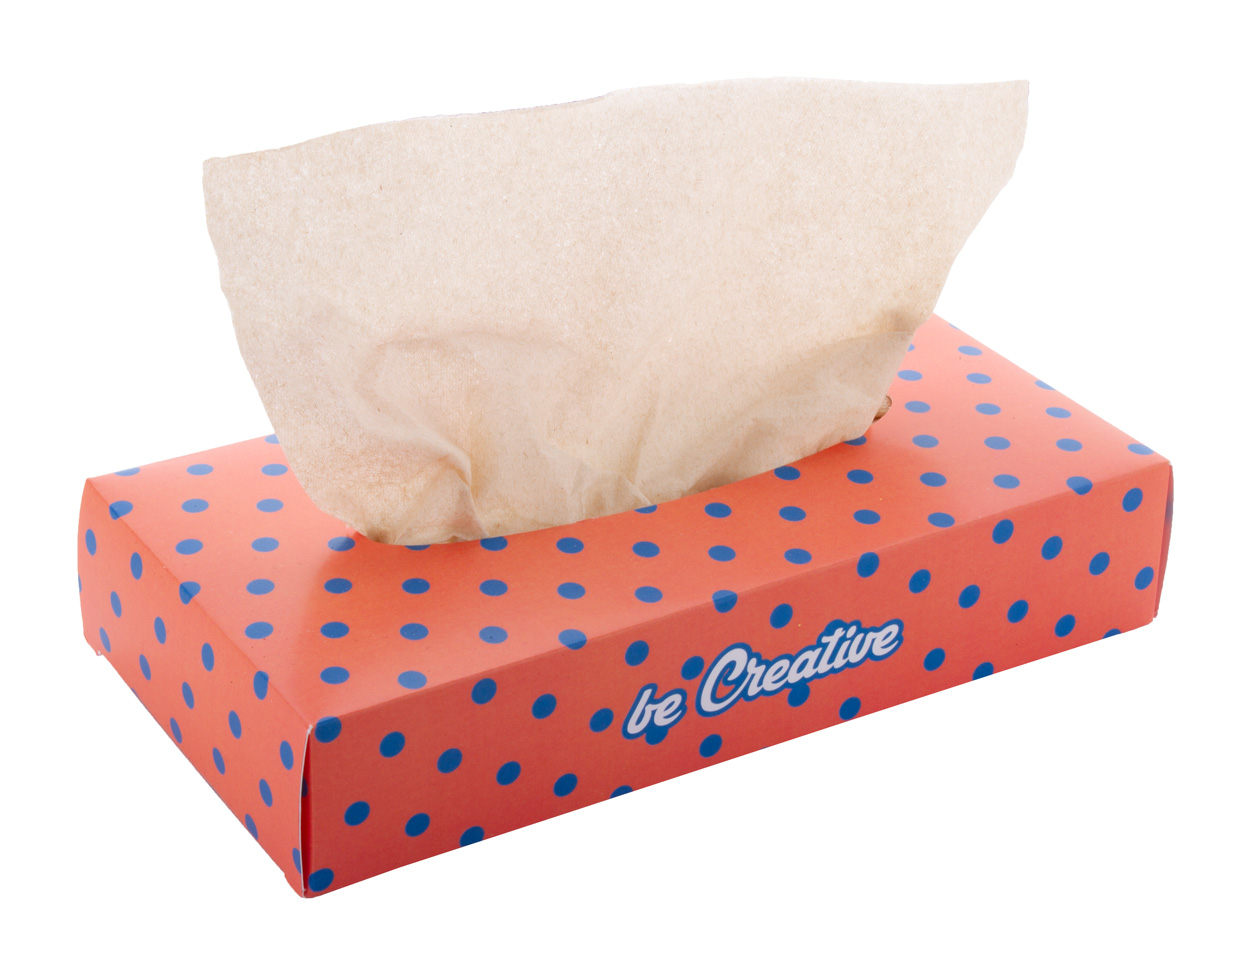 CreaSneeze tissue paper to order - white